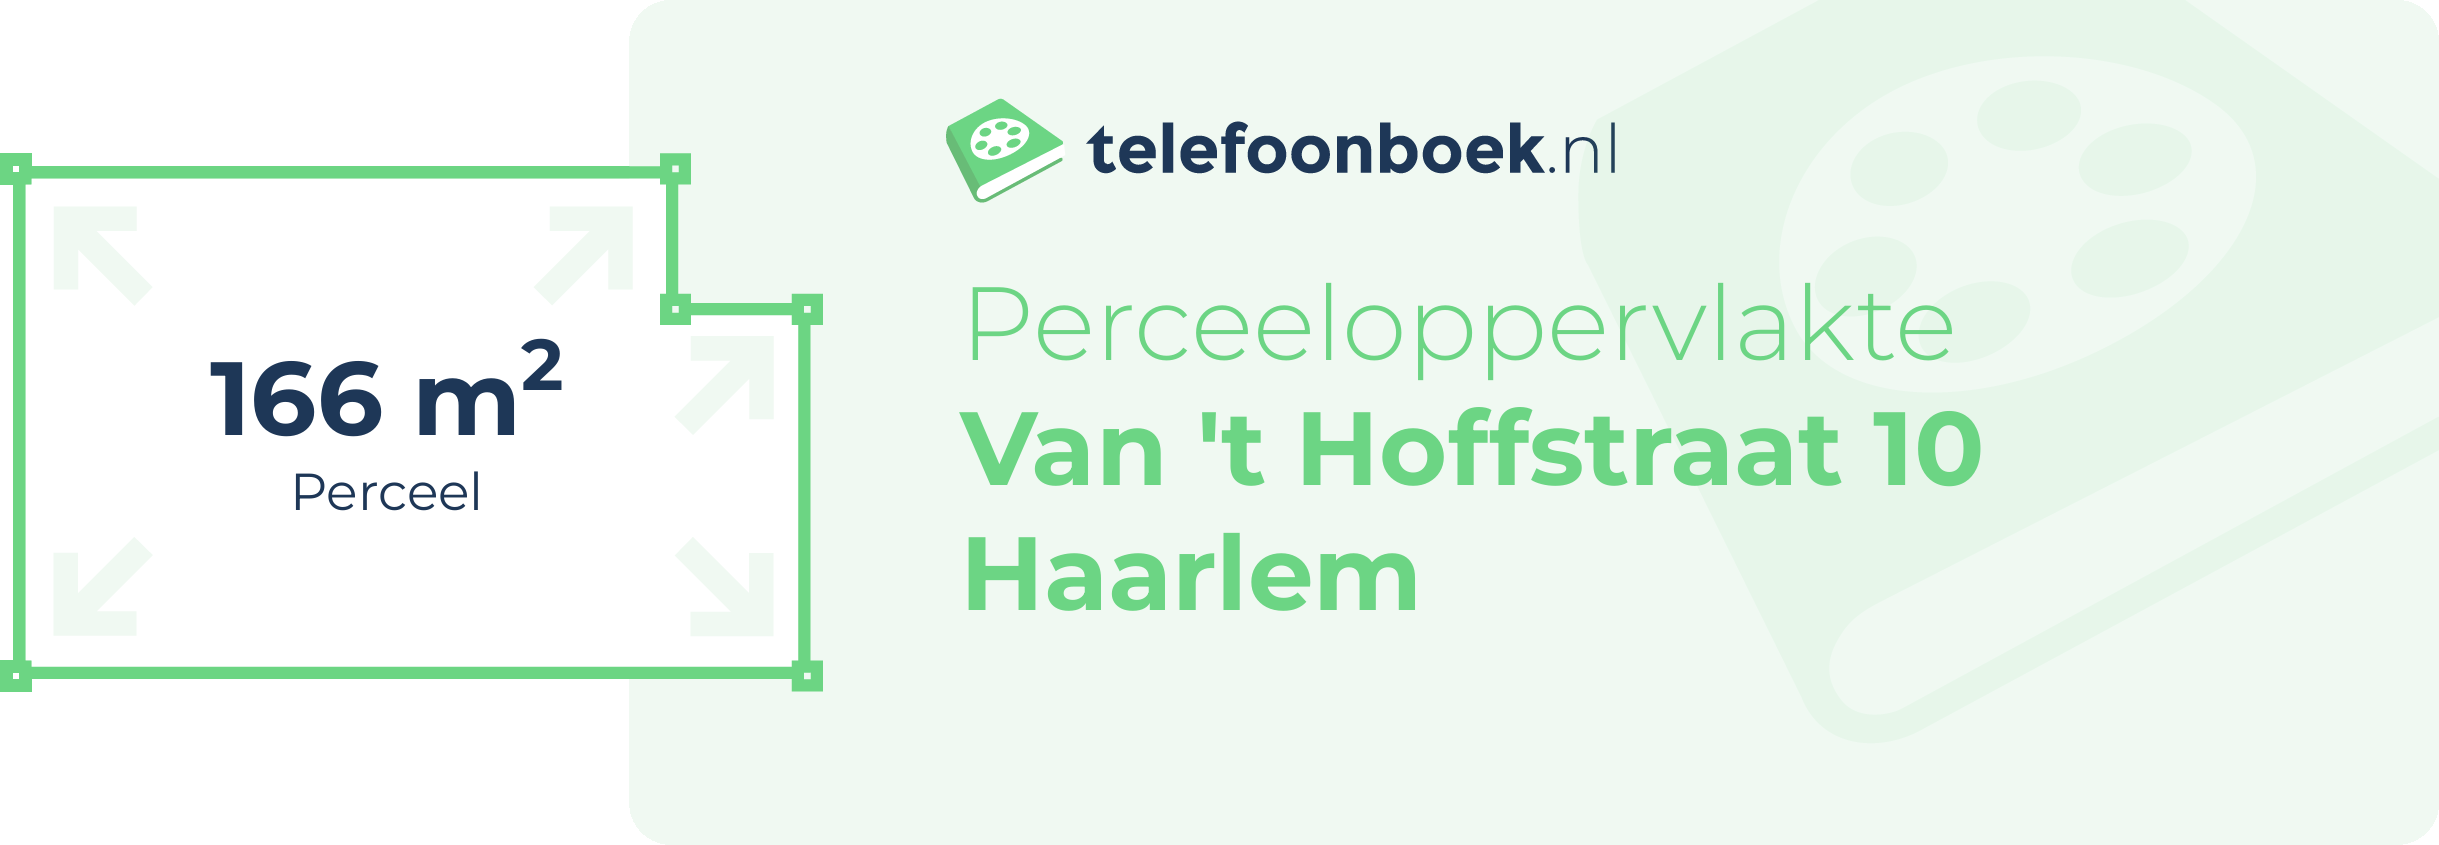 Perceeloppervlakte Van 't Hoffstraat 10 Haarlem